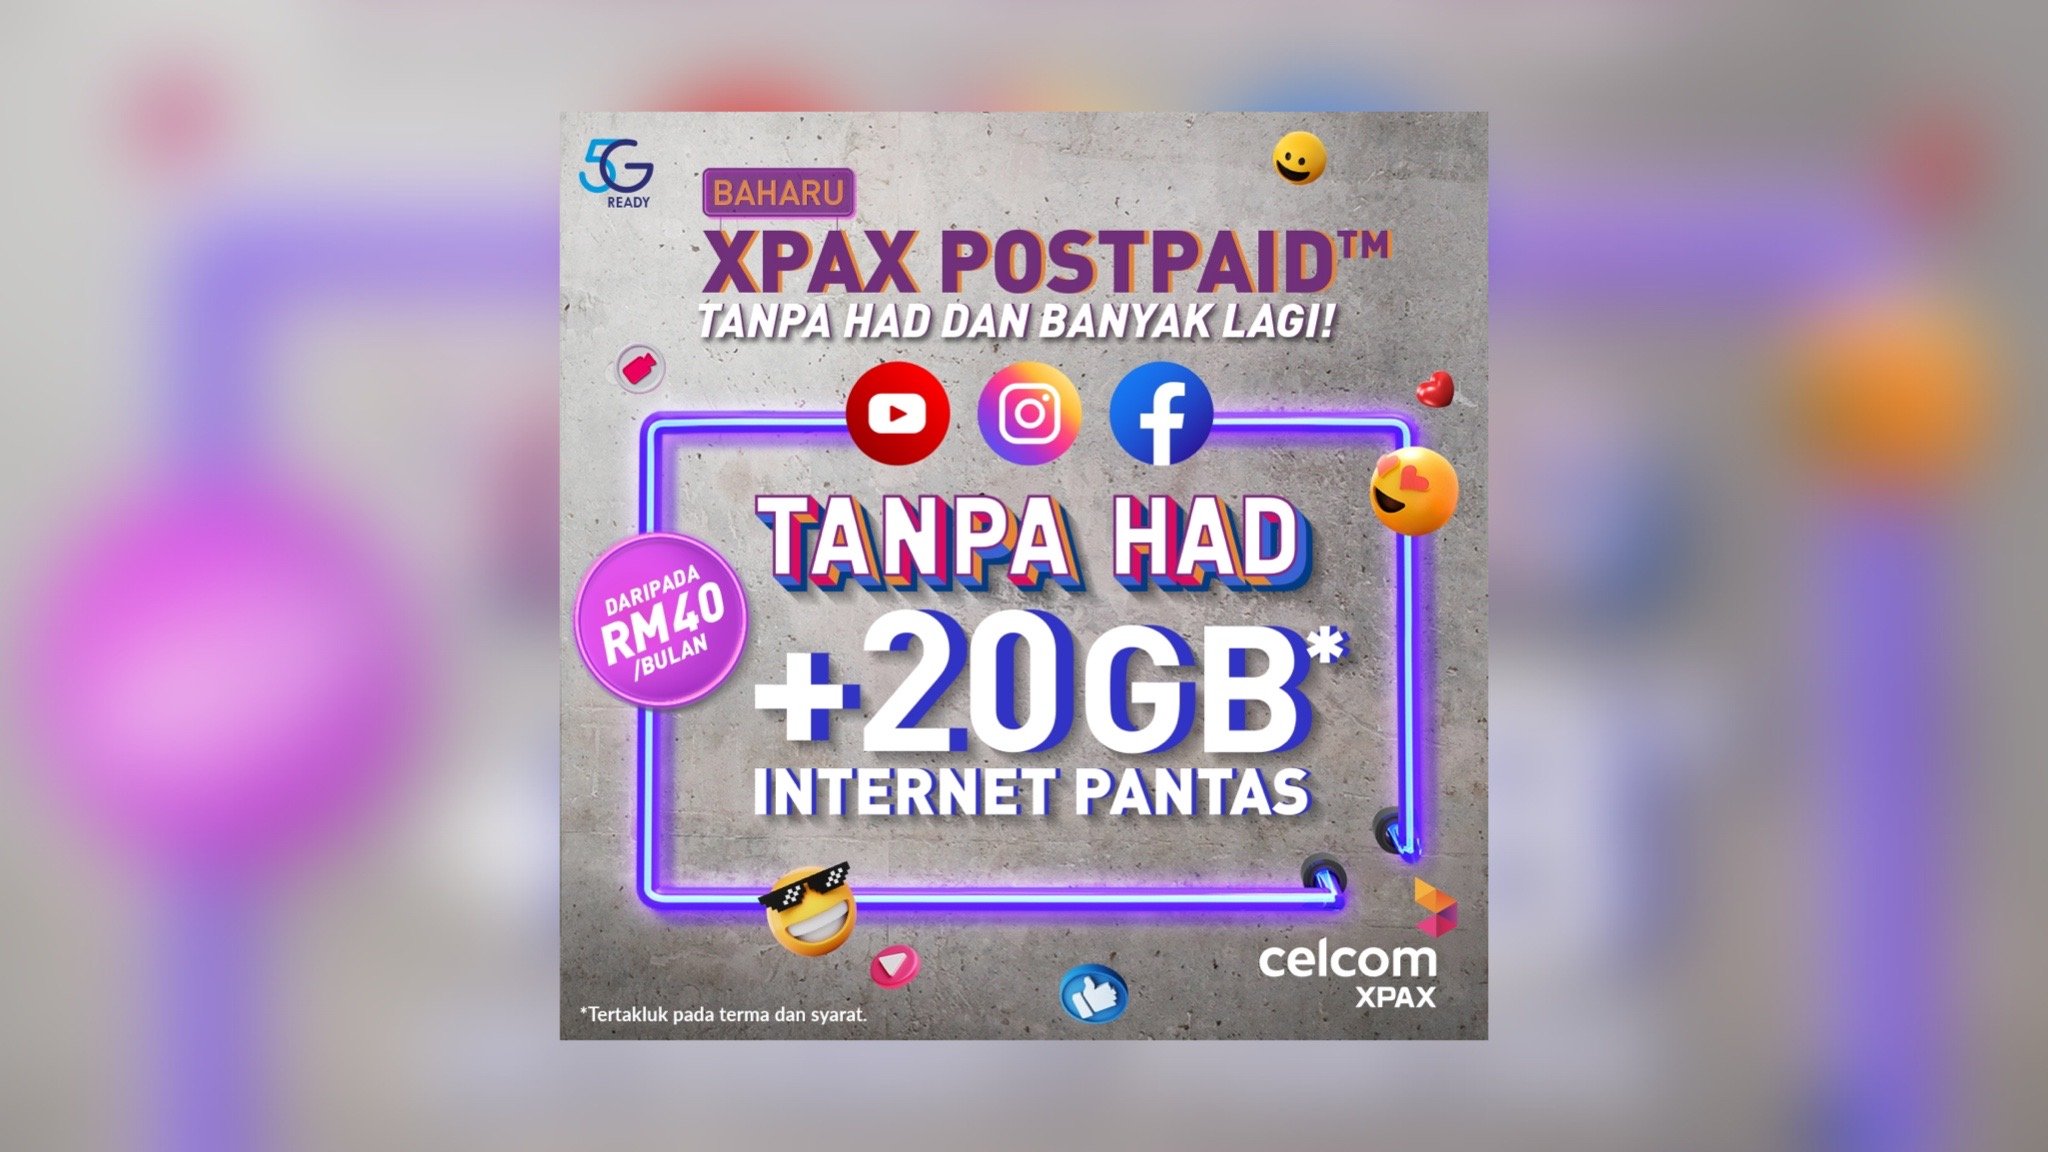 Pelan pascabayar XPAX POSTPAID menawarkan nilai tanpa had buat pengguna. - FOTO Celcom